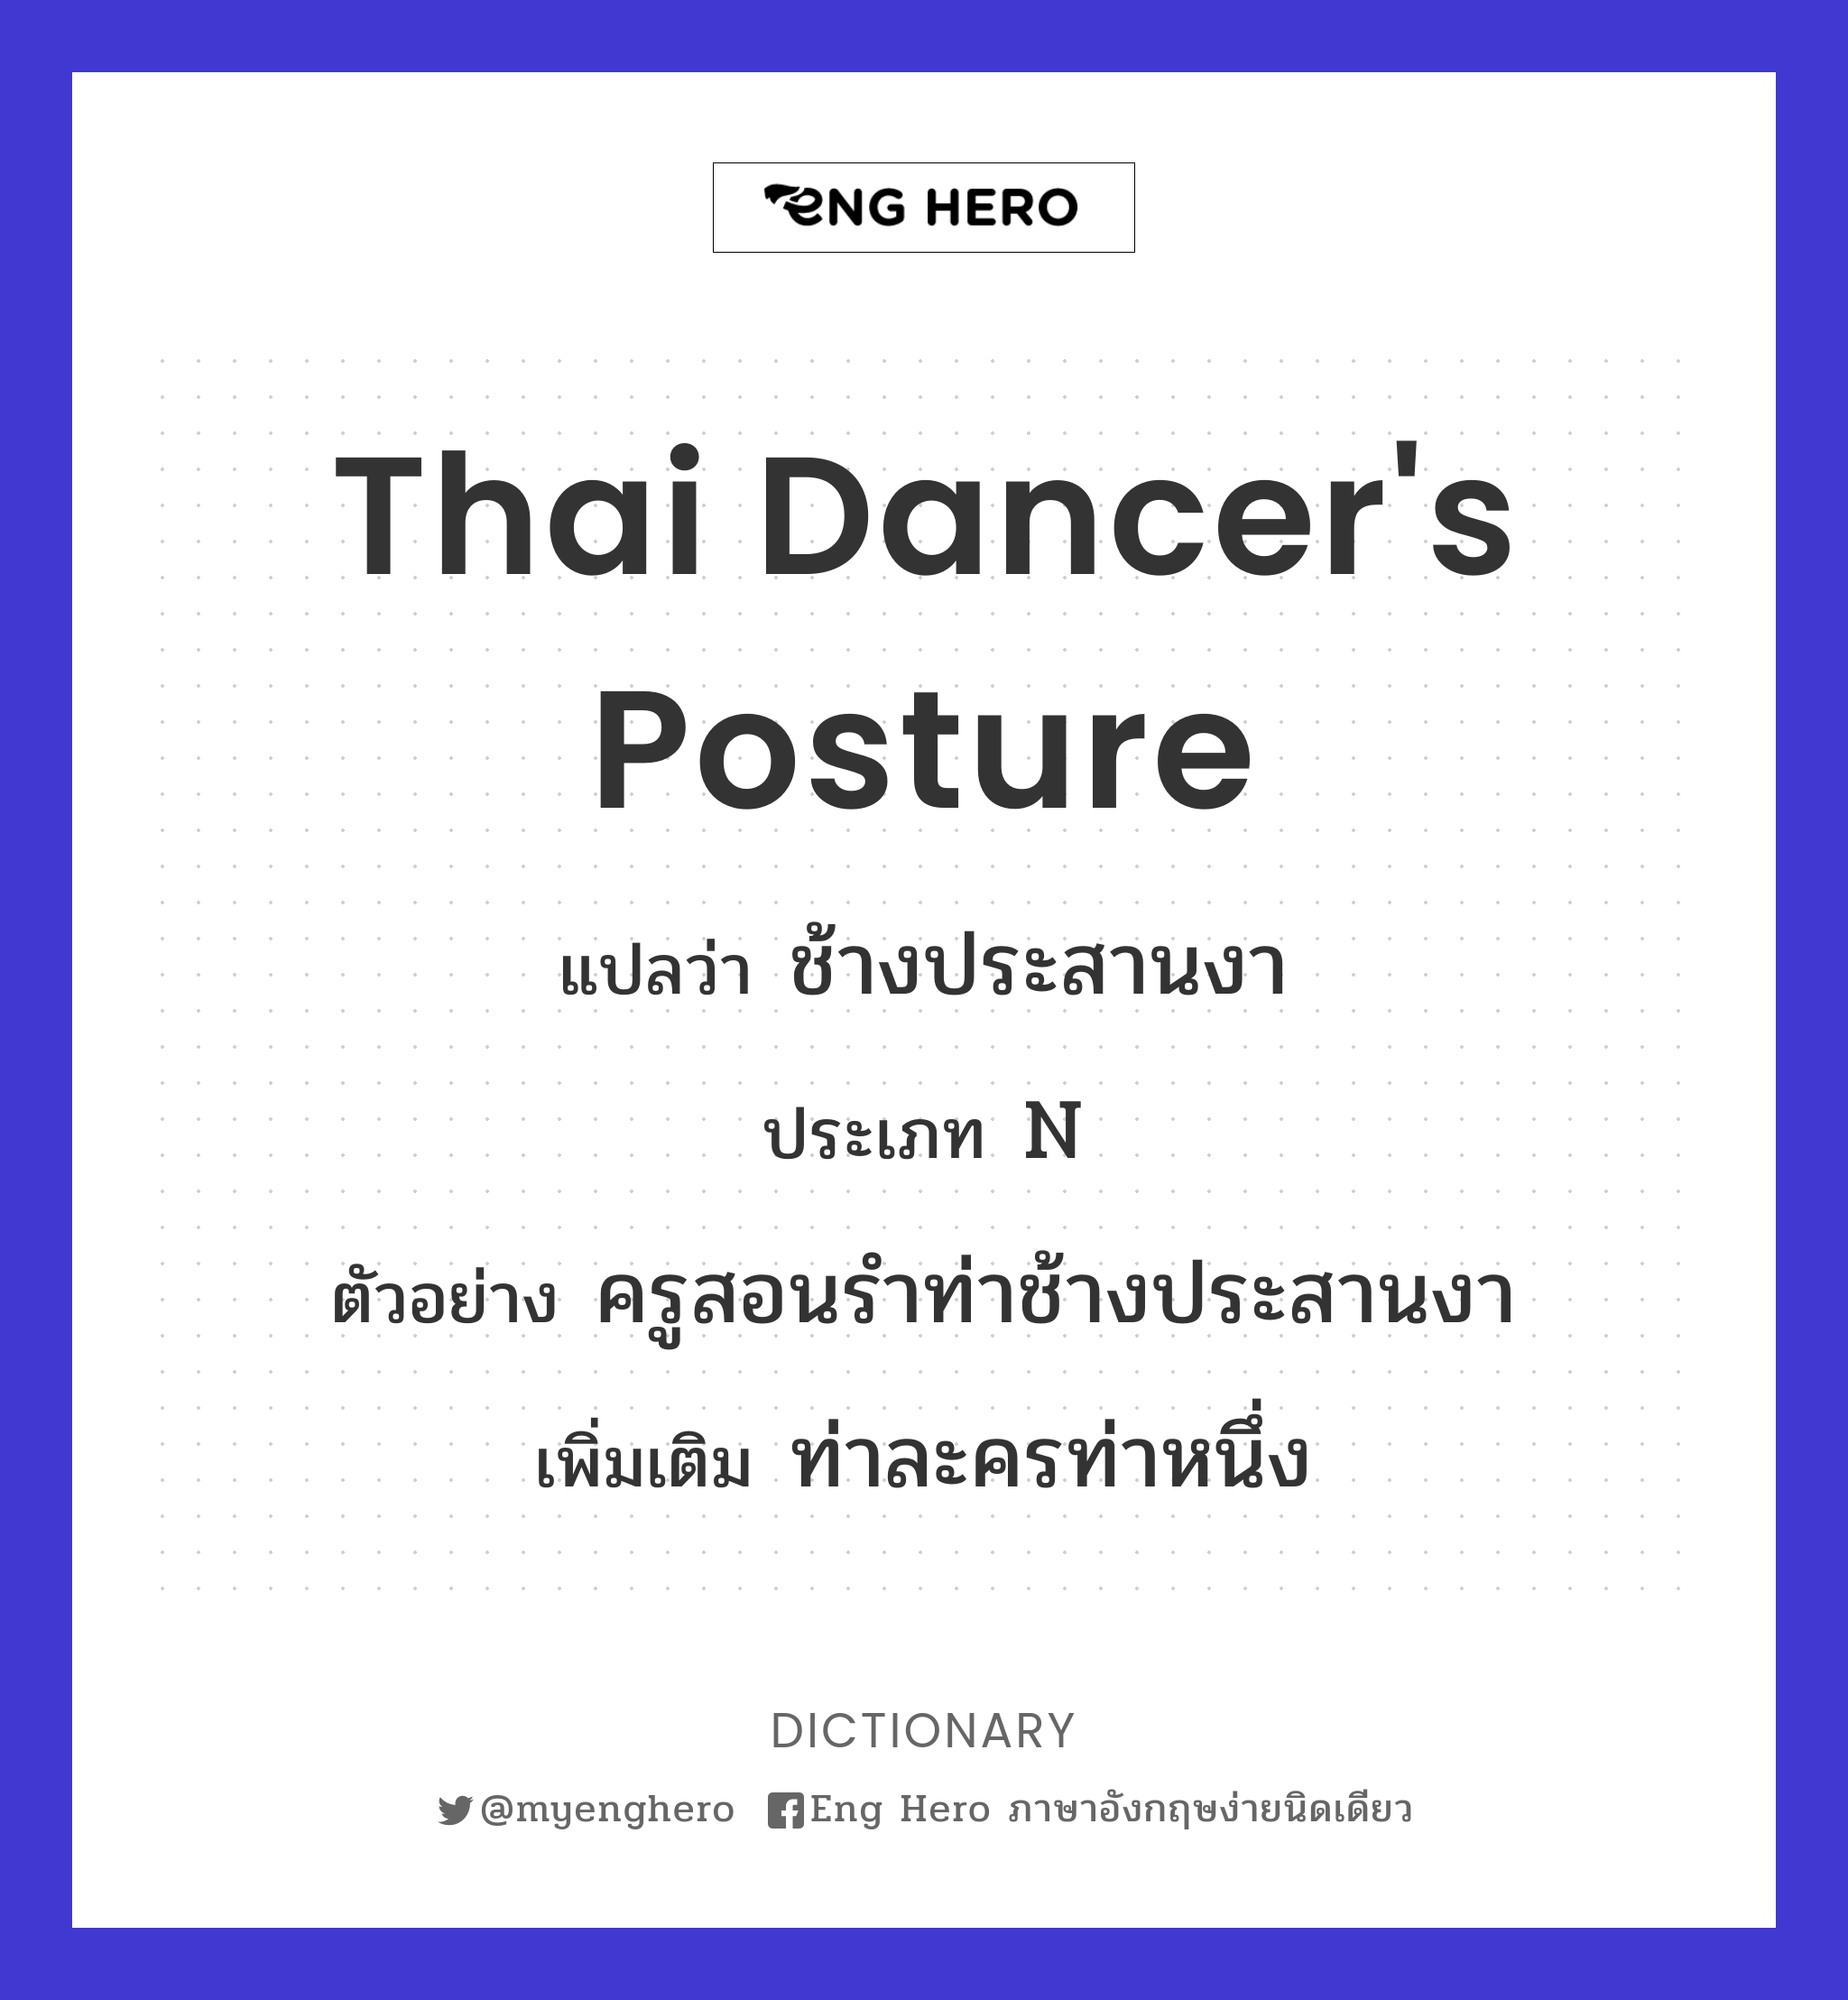 Thai dancer's posture